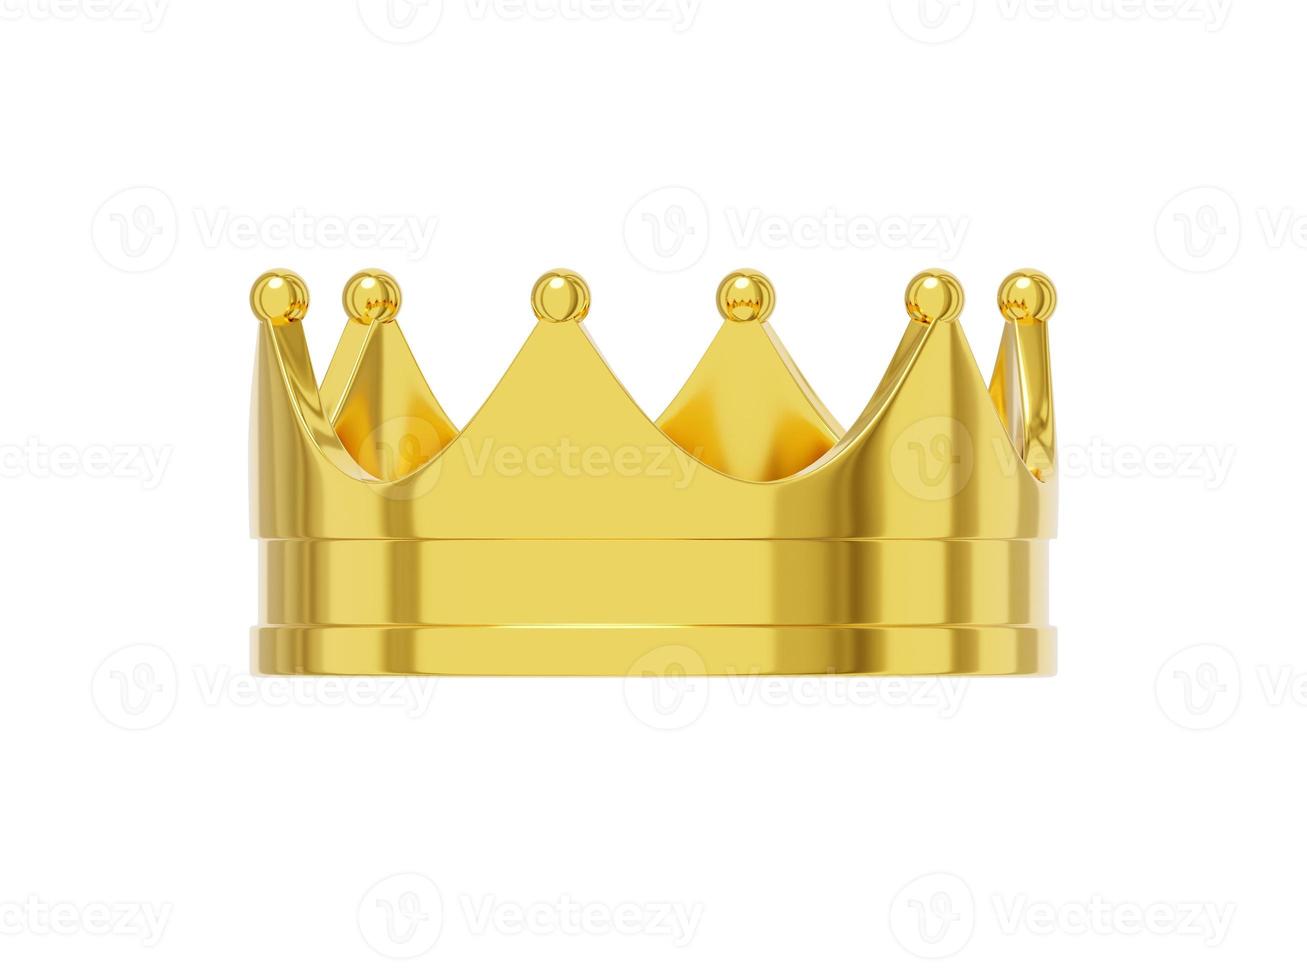 couronne royale réaliste en métal doré, symbole du pouvoir. rendu 3d. icône sur fond blanc. photo